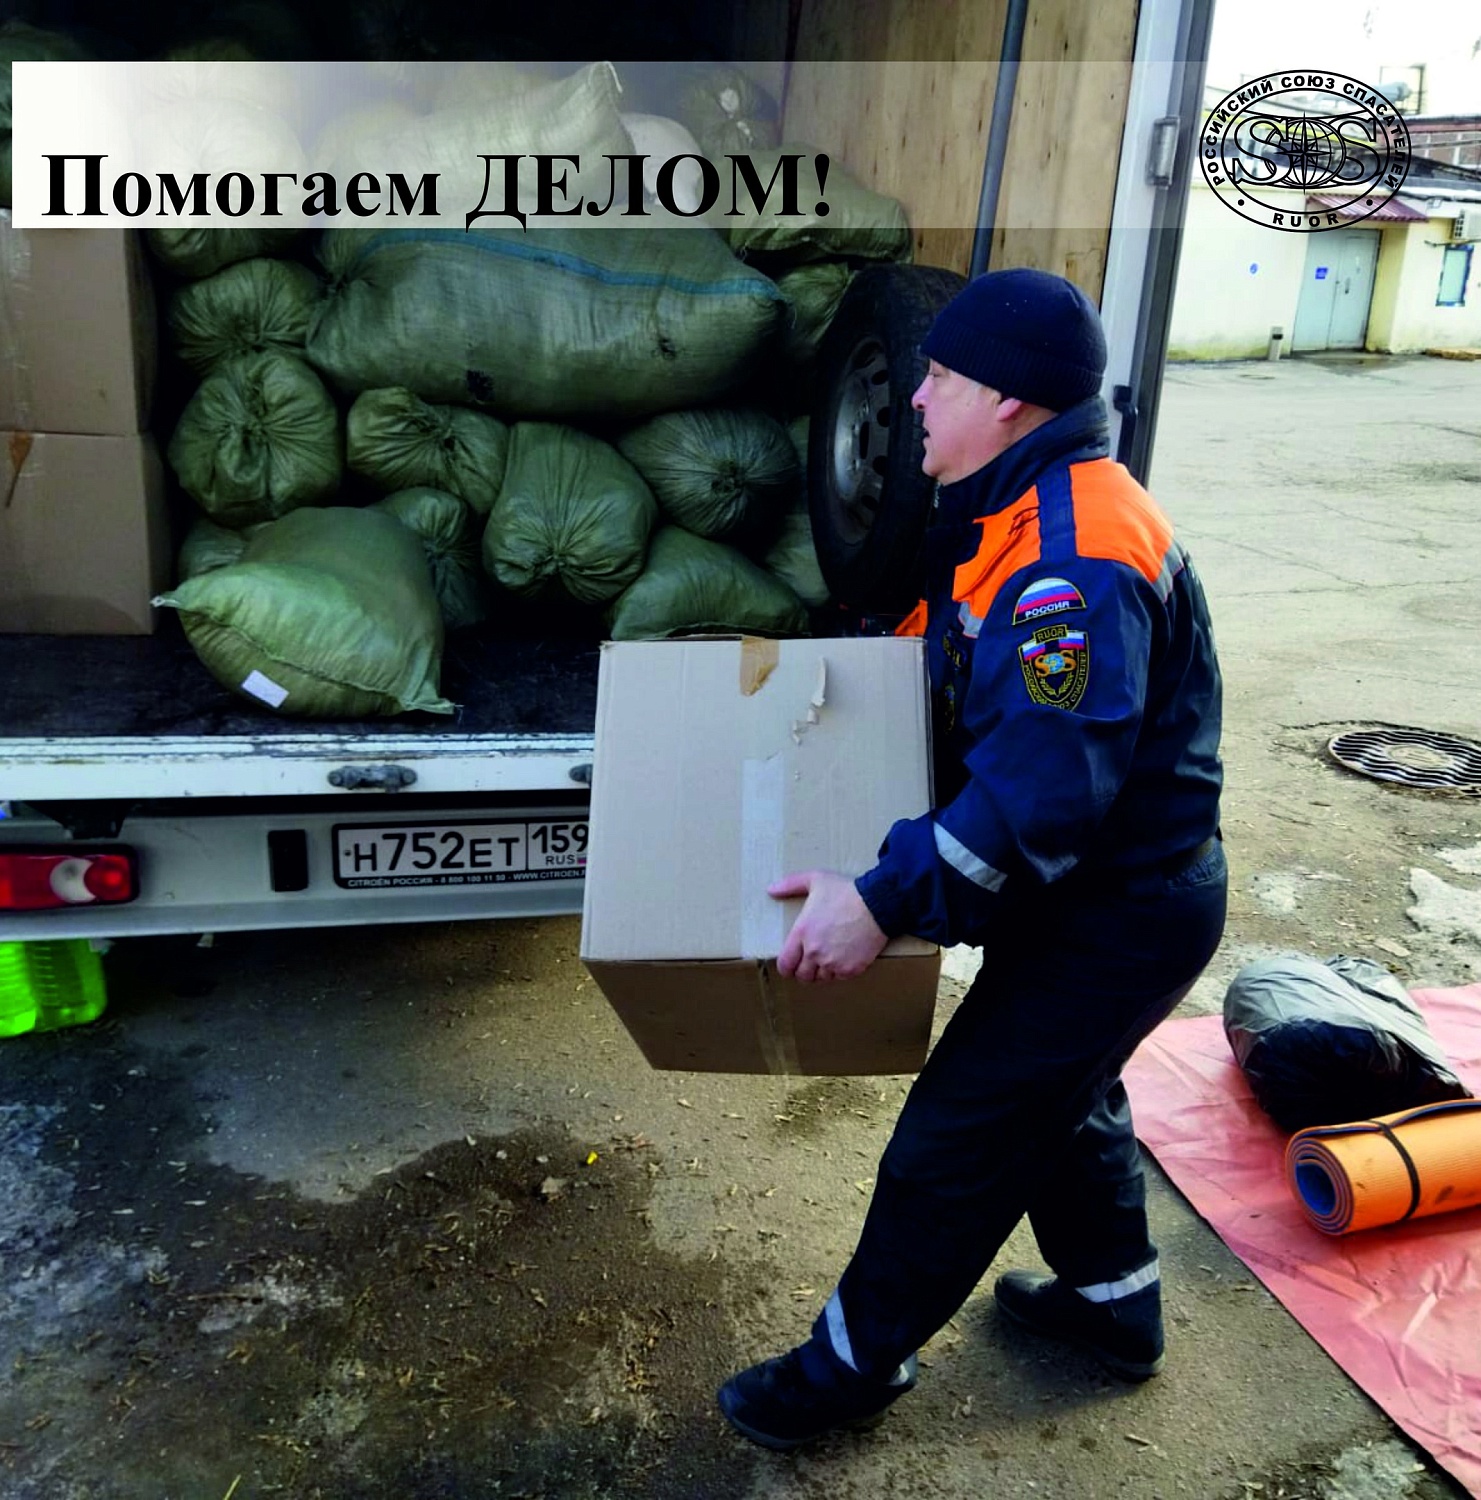 Спасатели Общероссийской общественной организации «Российский союз спасателей» выехали в Ростов-на-Дону с целью оказания гуманитарной помощи